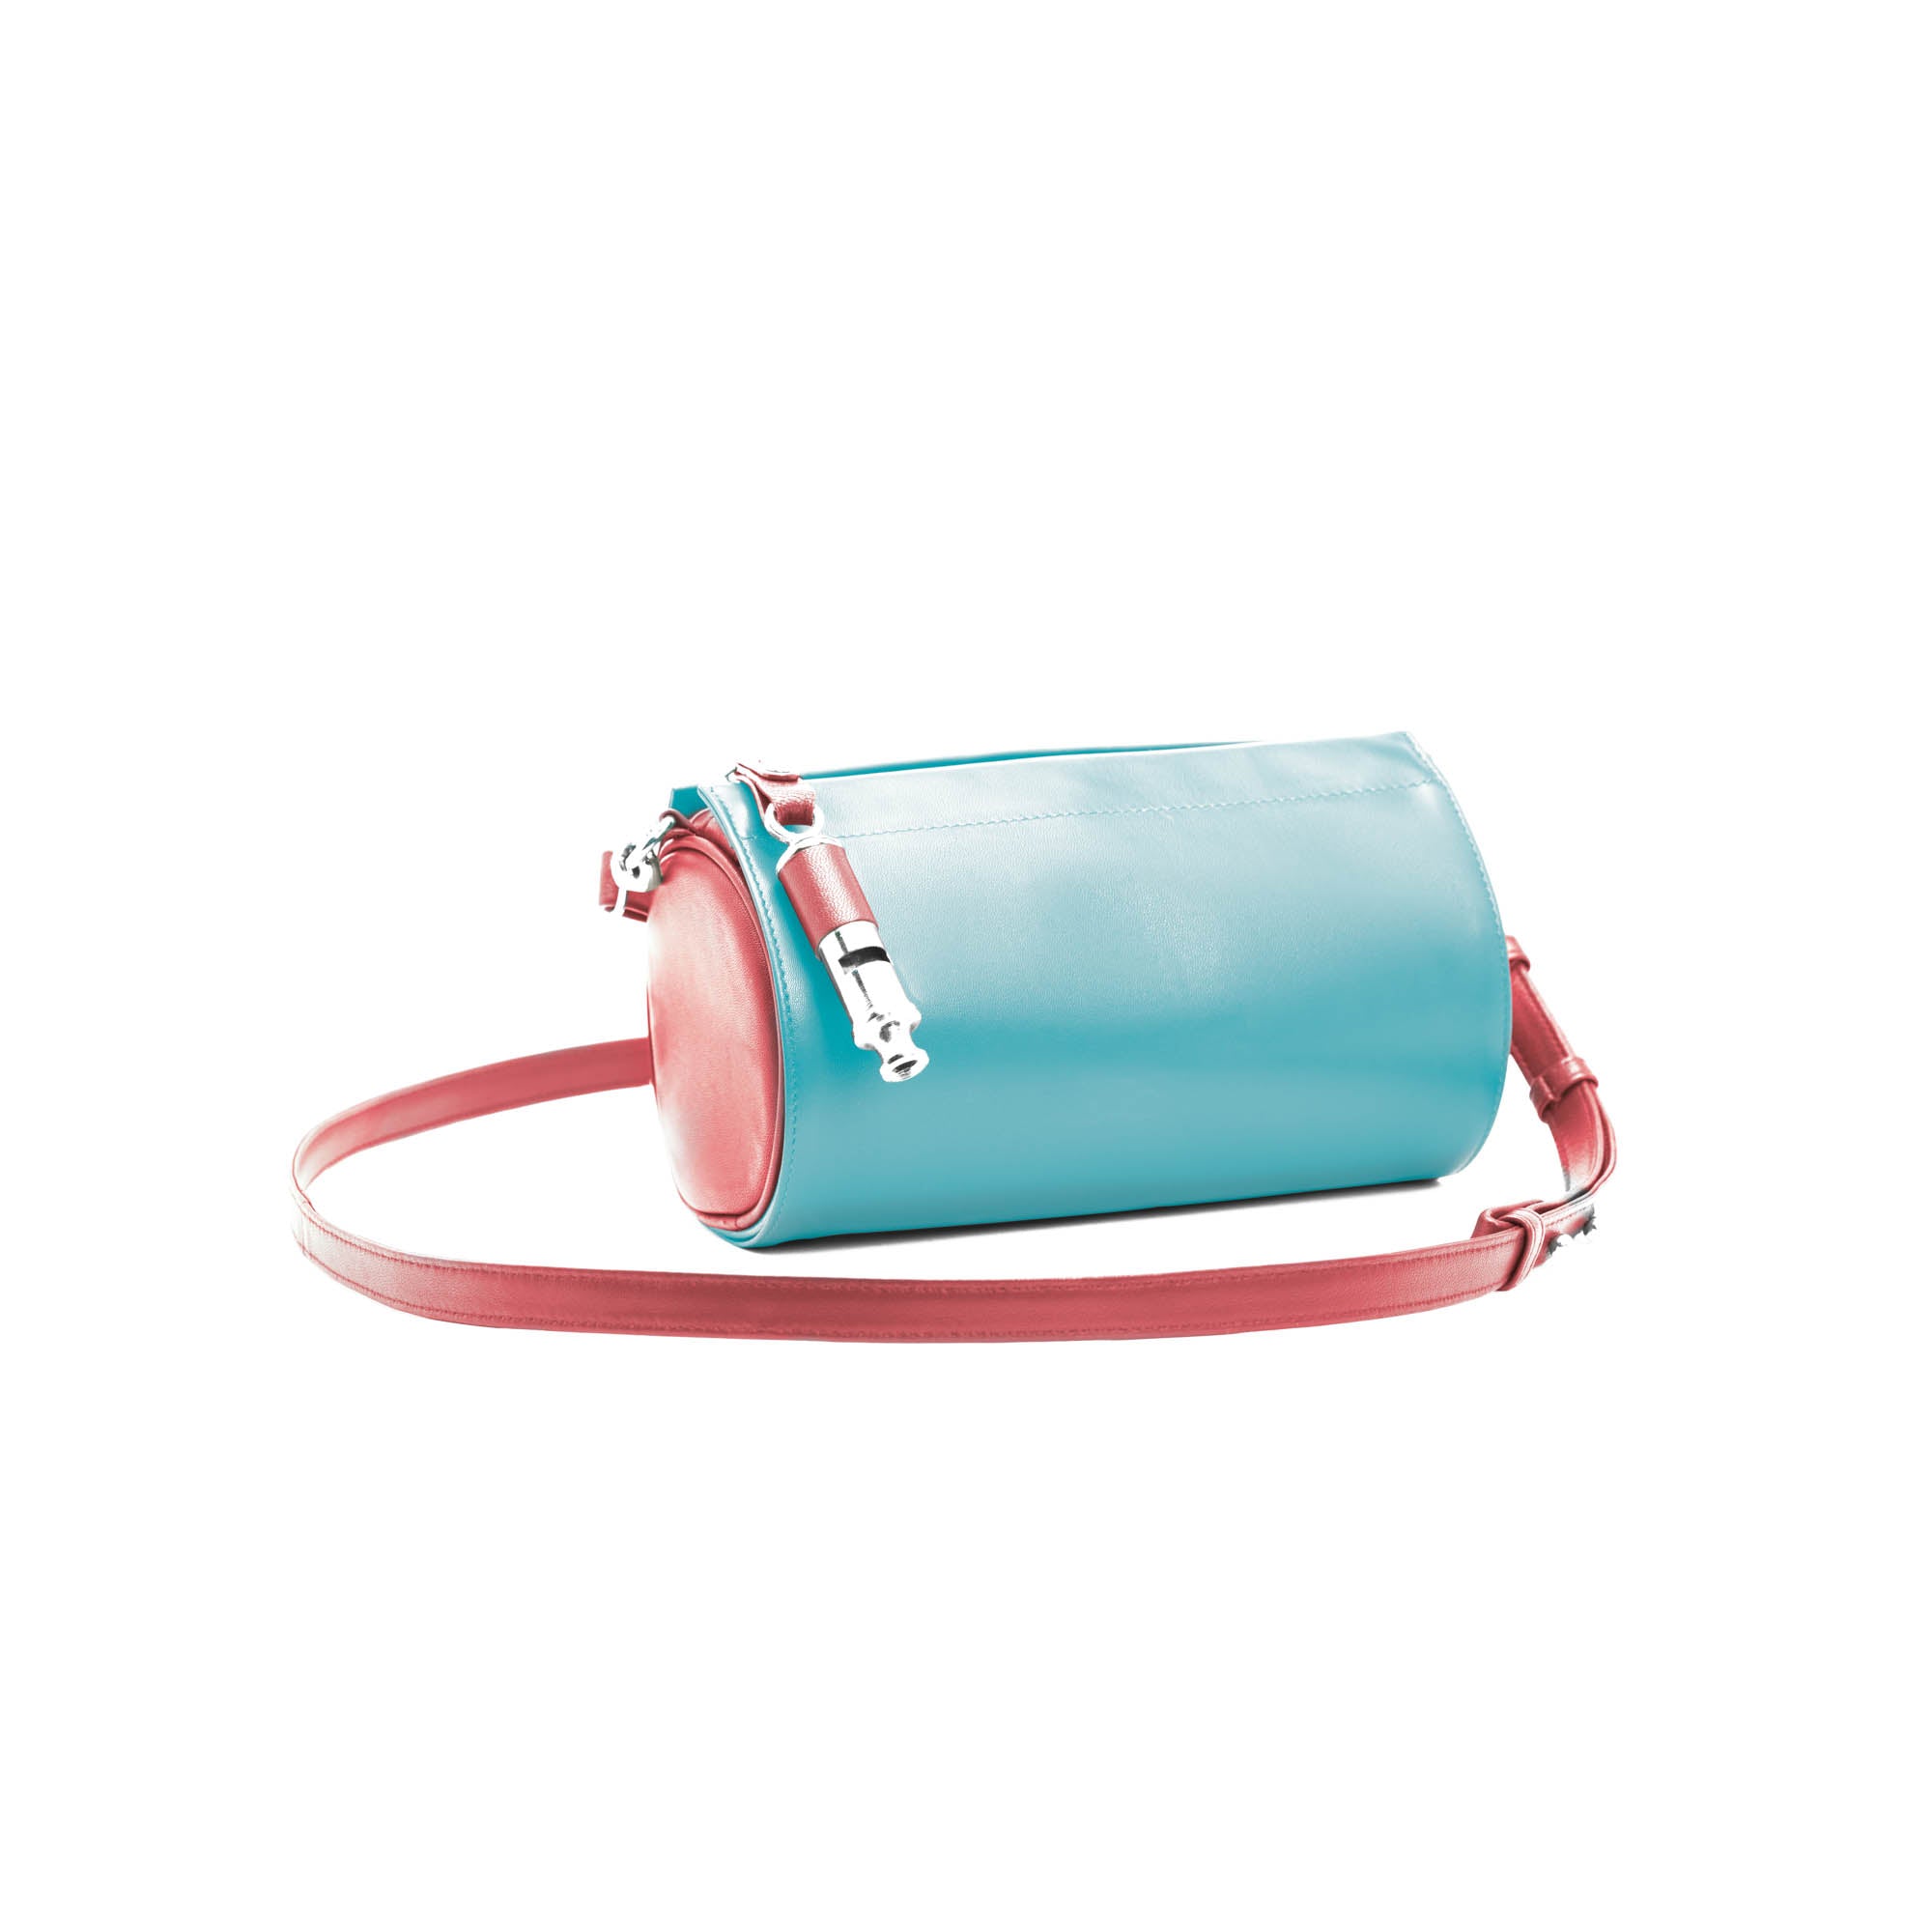 Gamechanger Barrel Solid Red Lambskin 5-In-1 Convertible Handbag